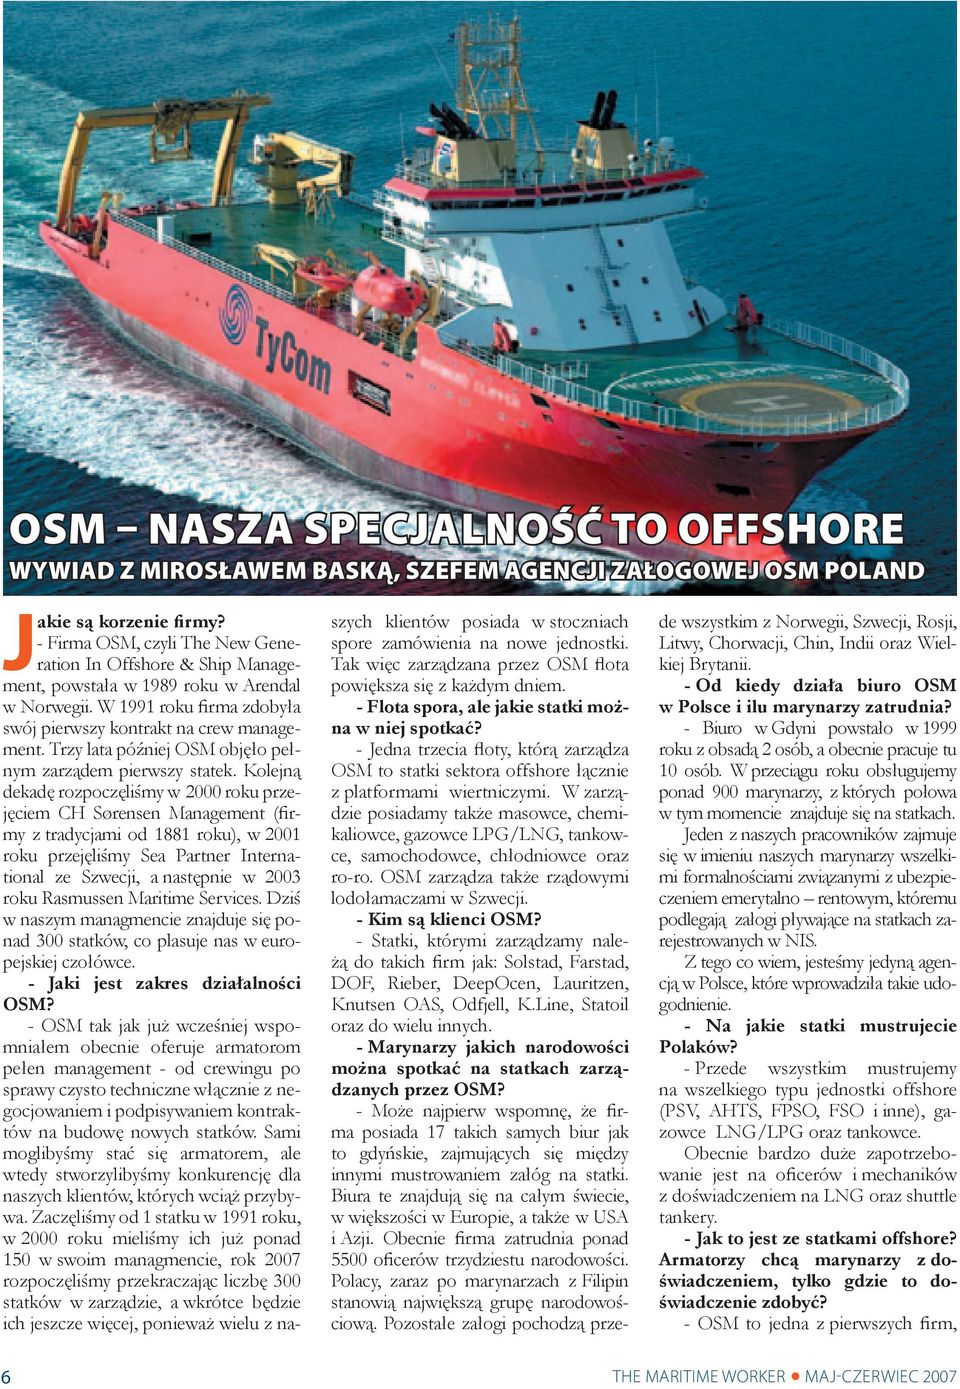 Trzy lata później OSM objęło pełnym zarządem pierwszy statek.